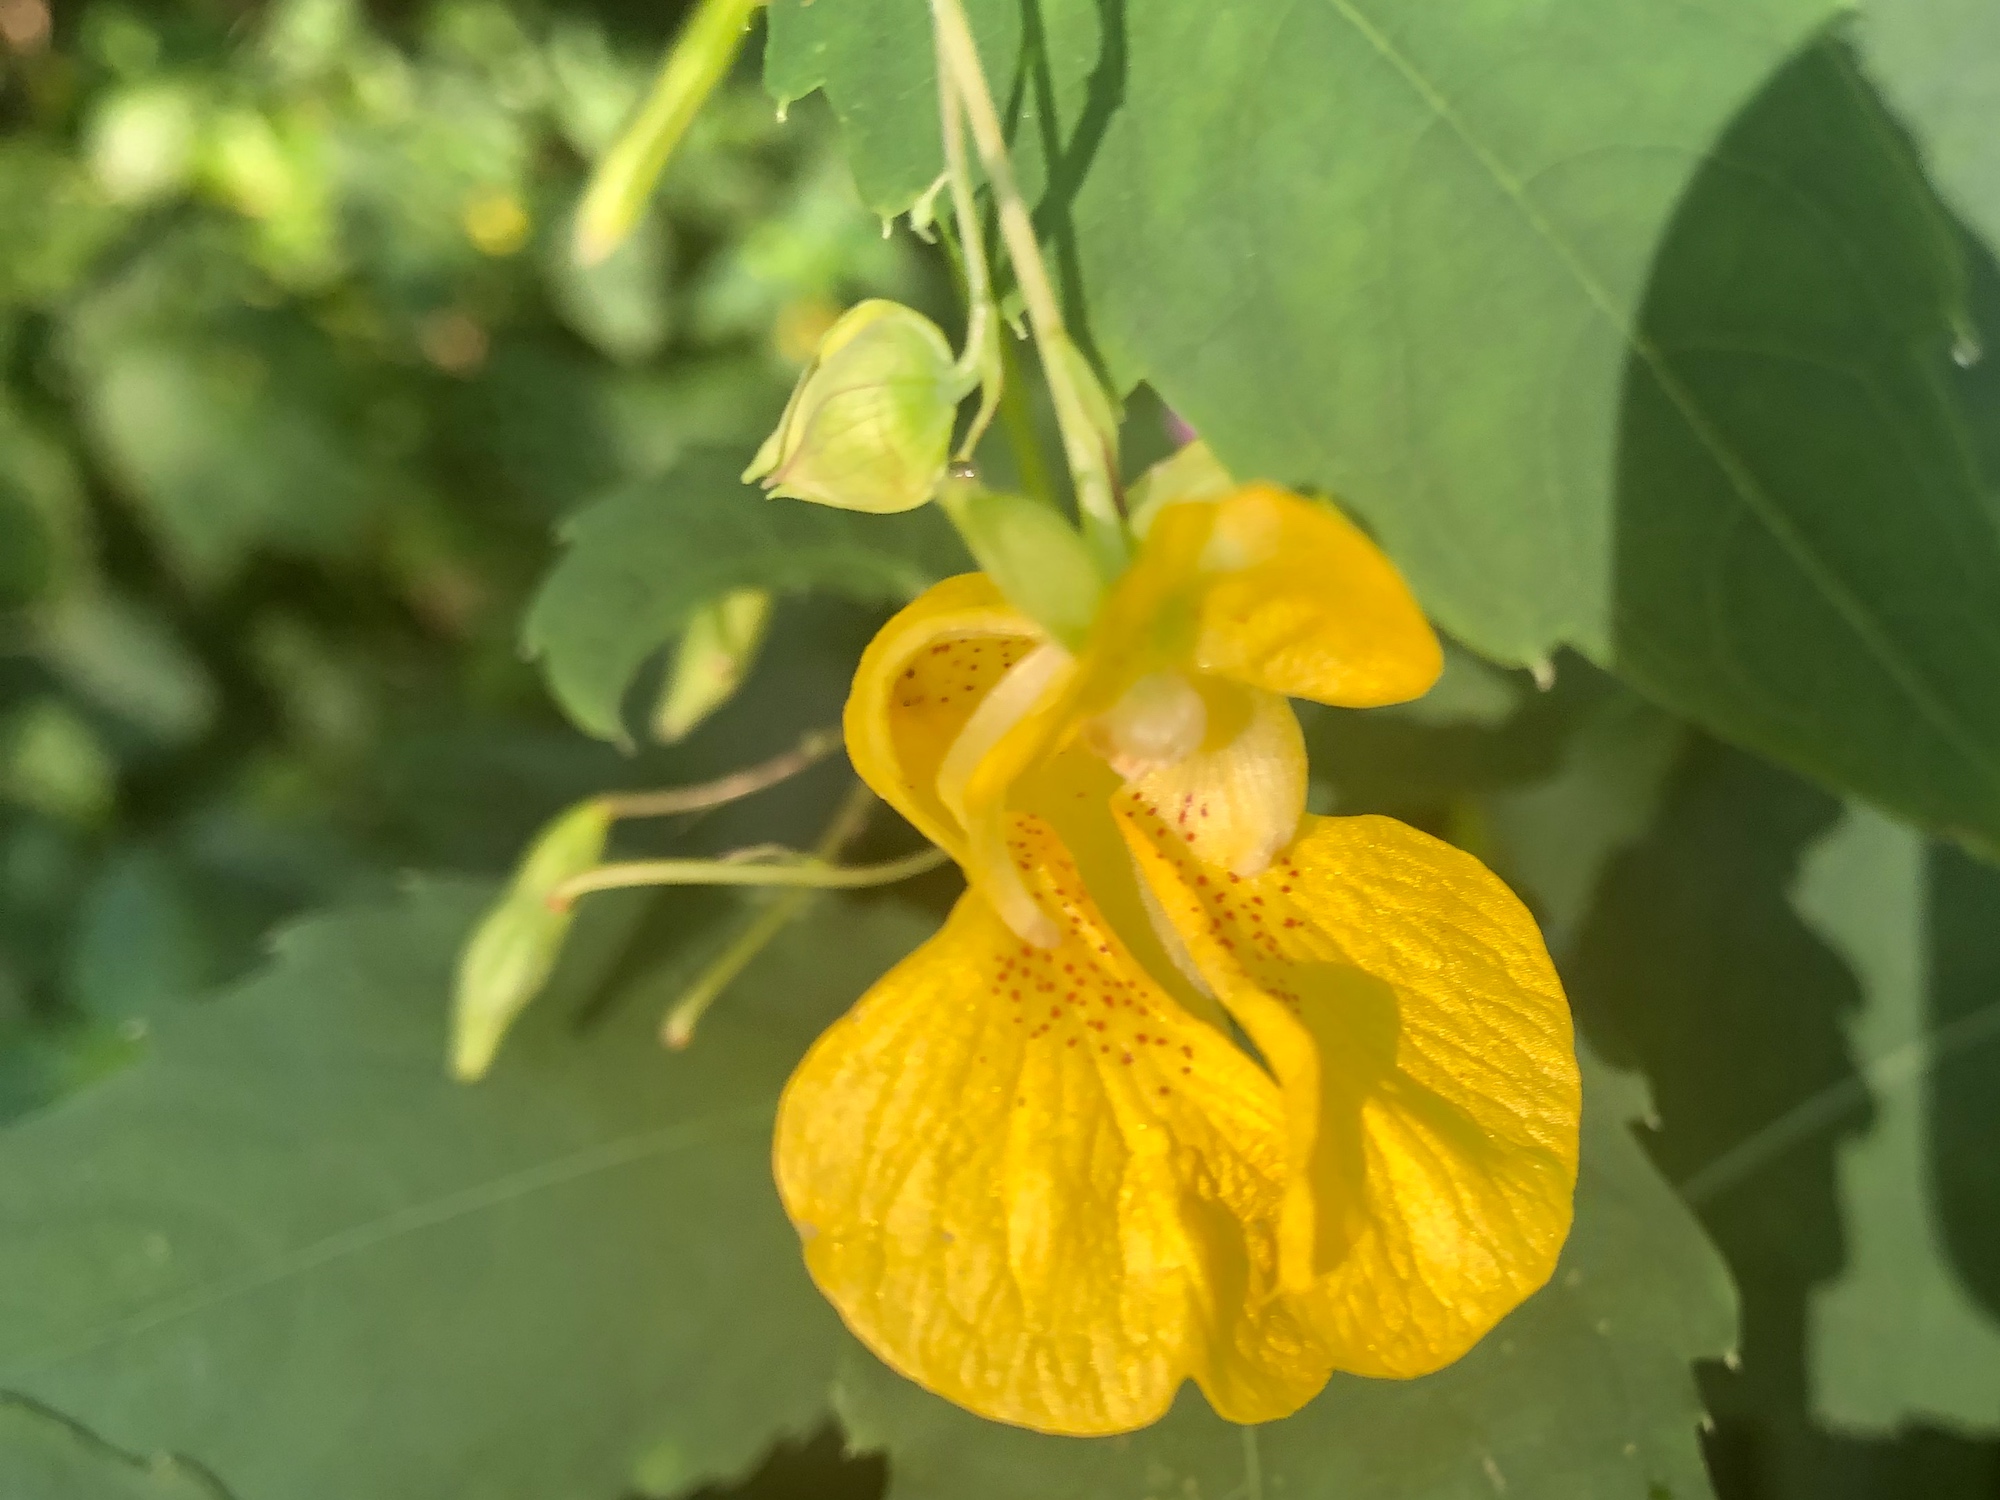 Yellow Jewelweed in the Oak Savanna on July 31, 2019.